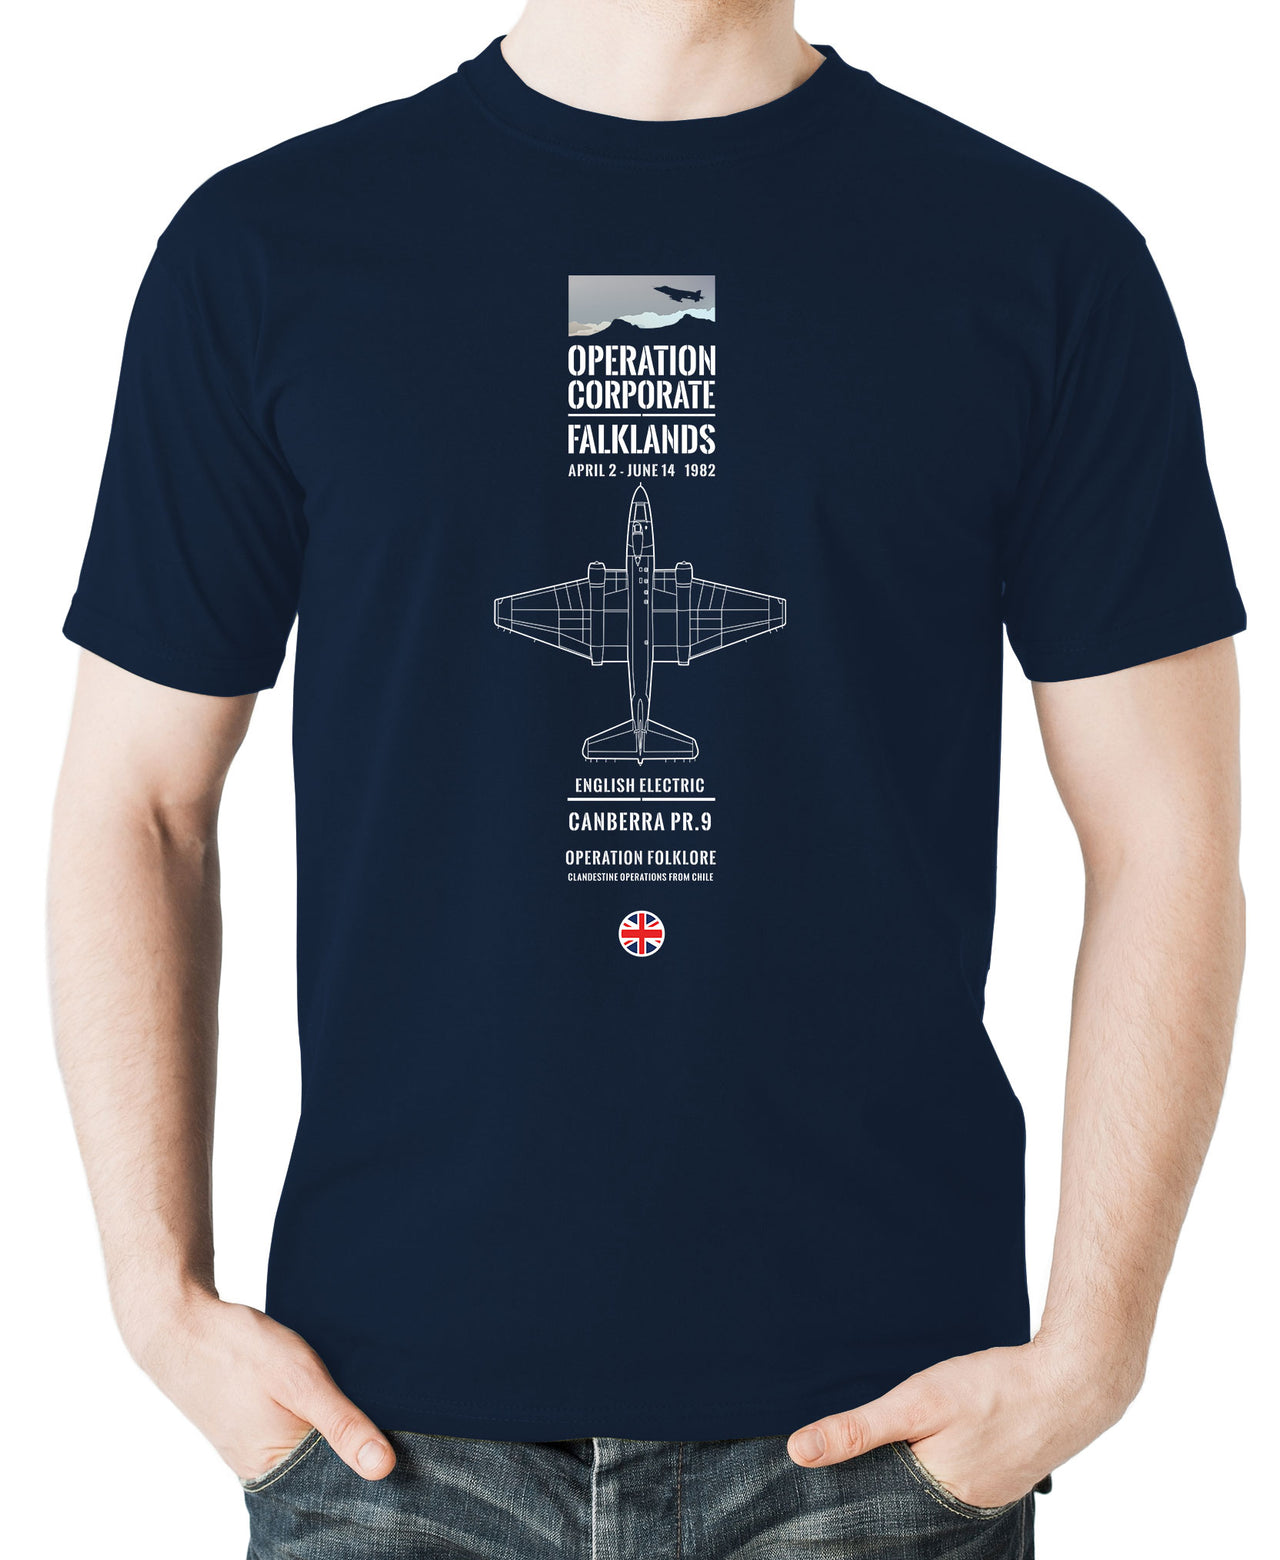 Canberra PR9 - T-shirt